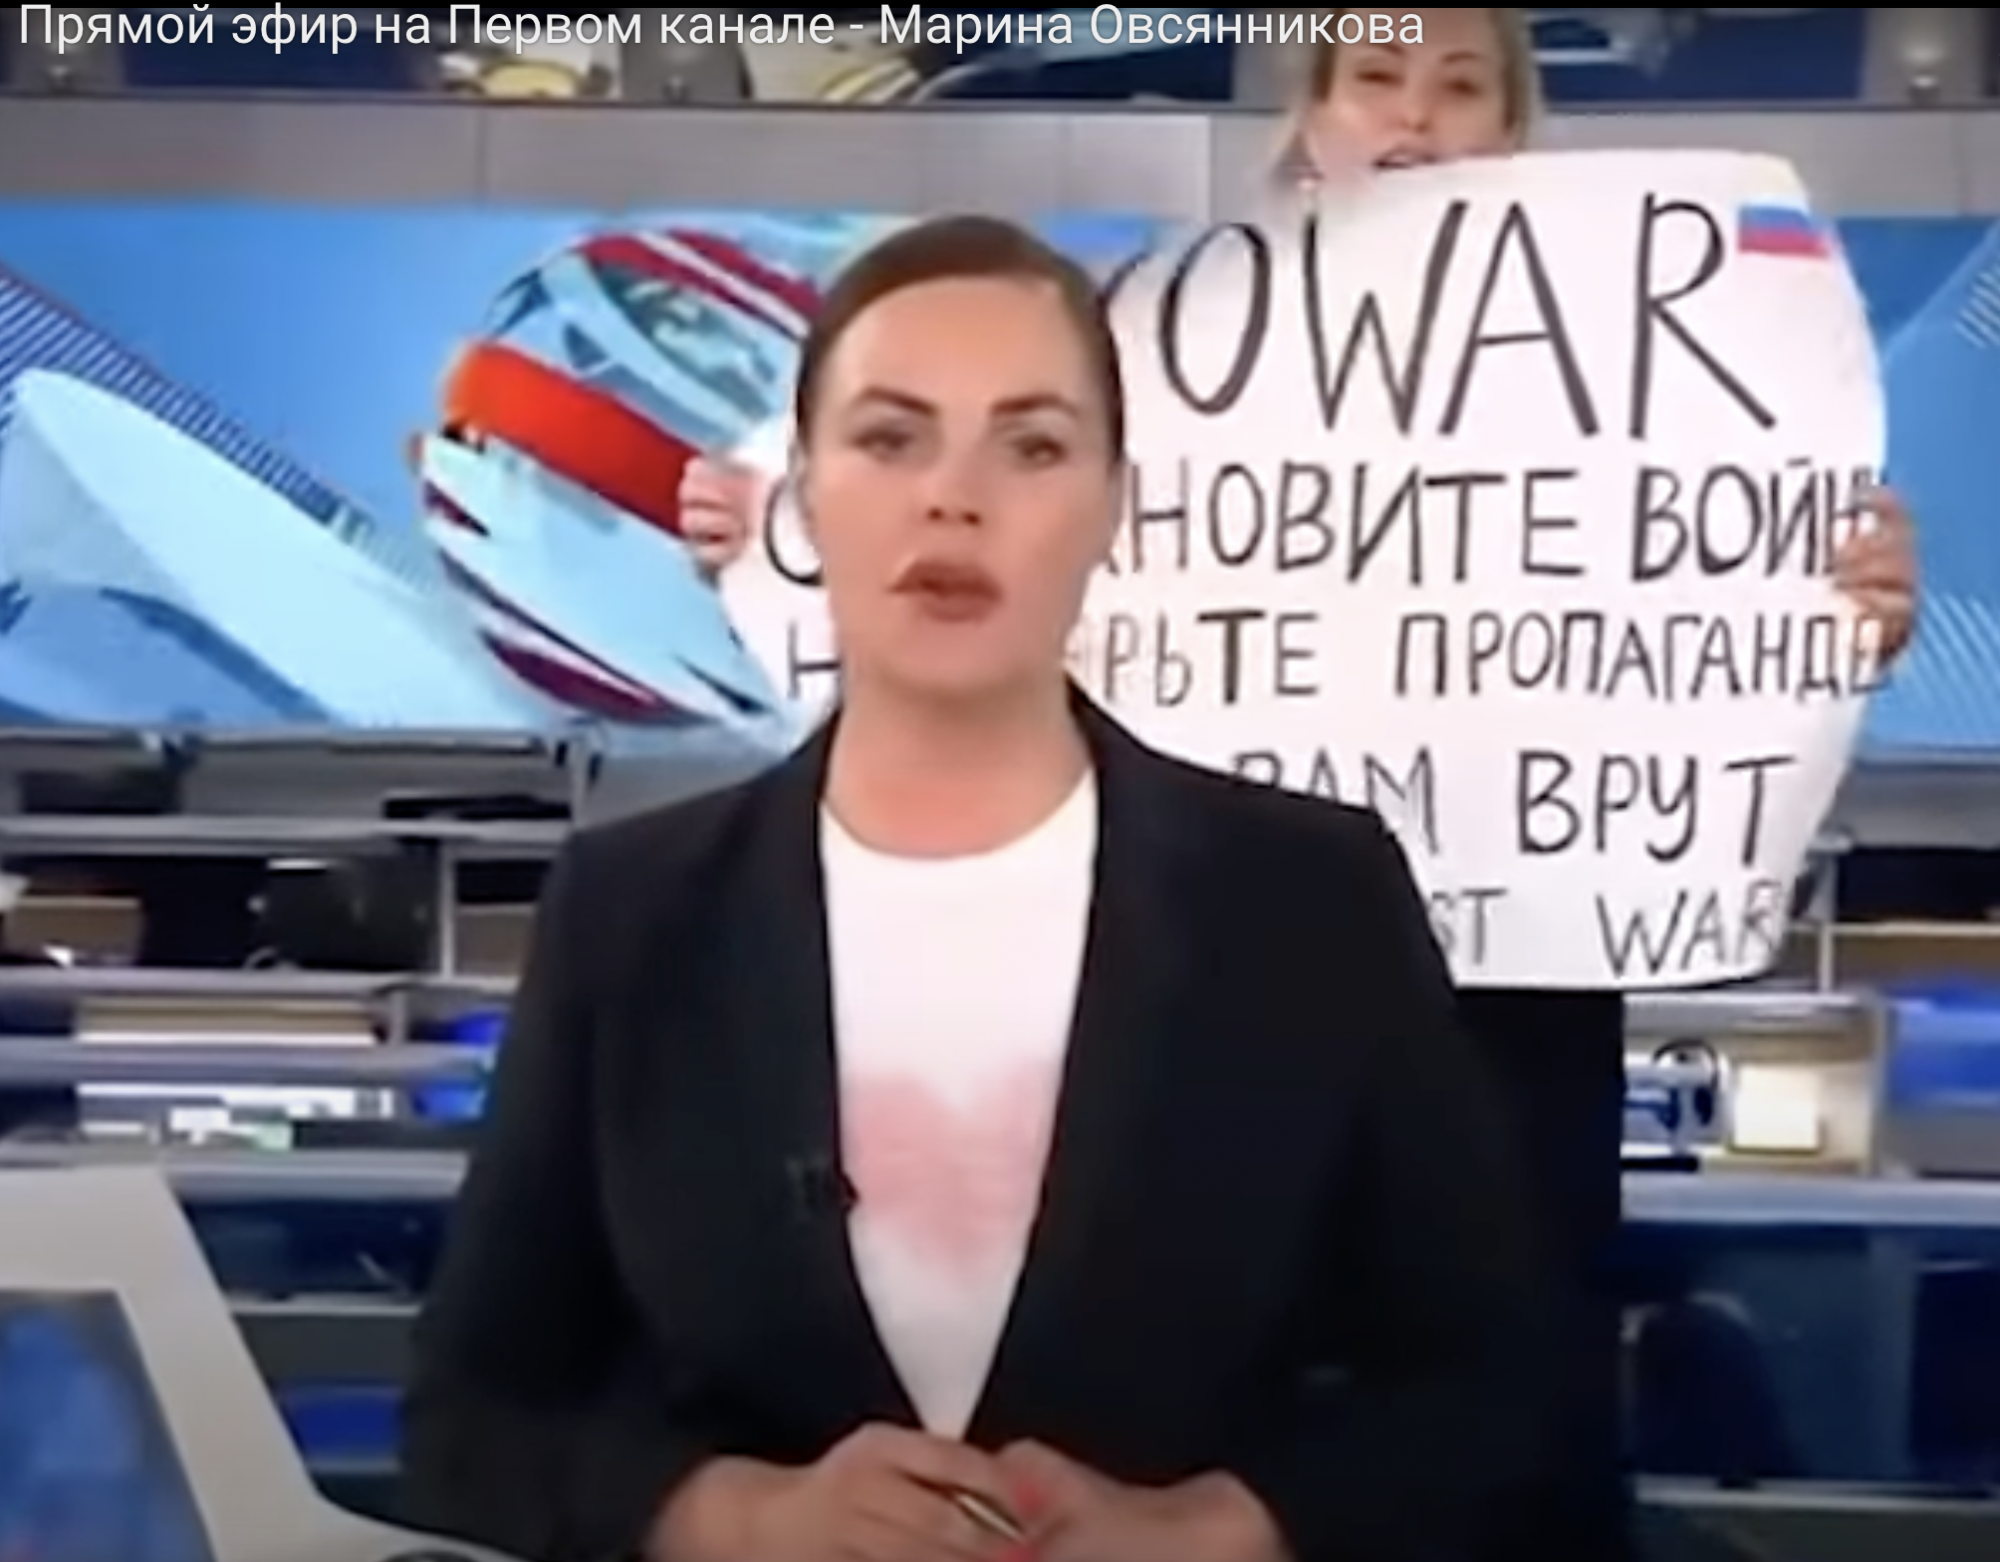 Párizsban megmérgezhették Marina Ovszjannyikova orosz újságírót, aki transzparenssel tüntetett a híradóban a háború ellen